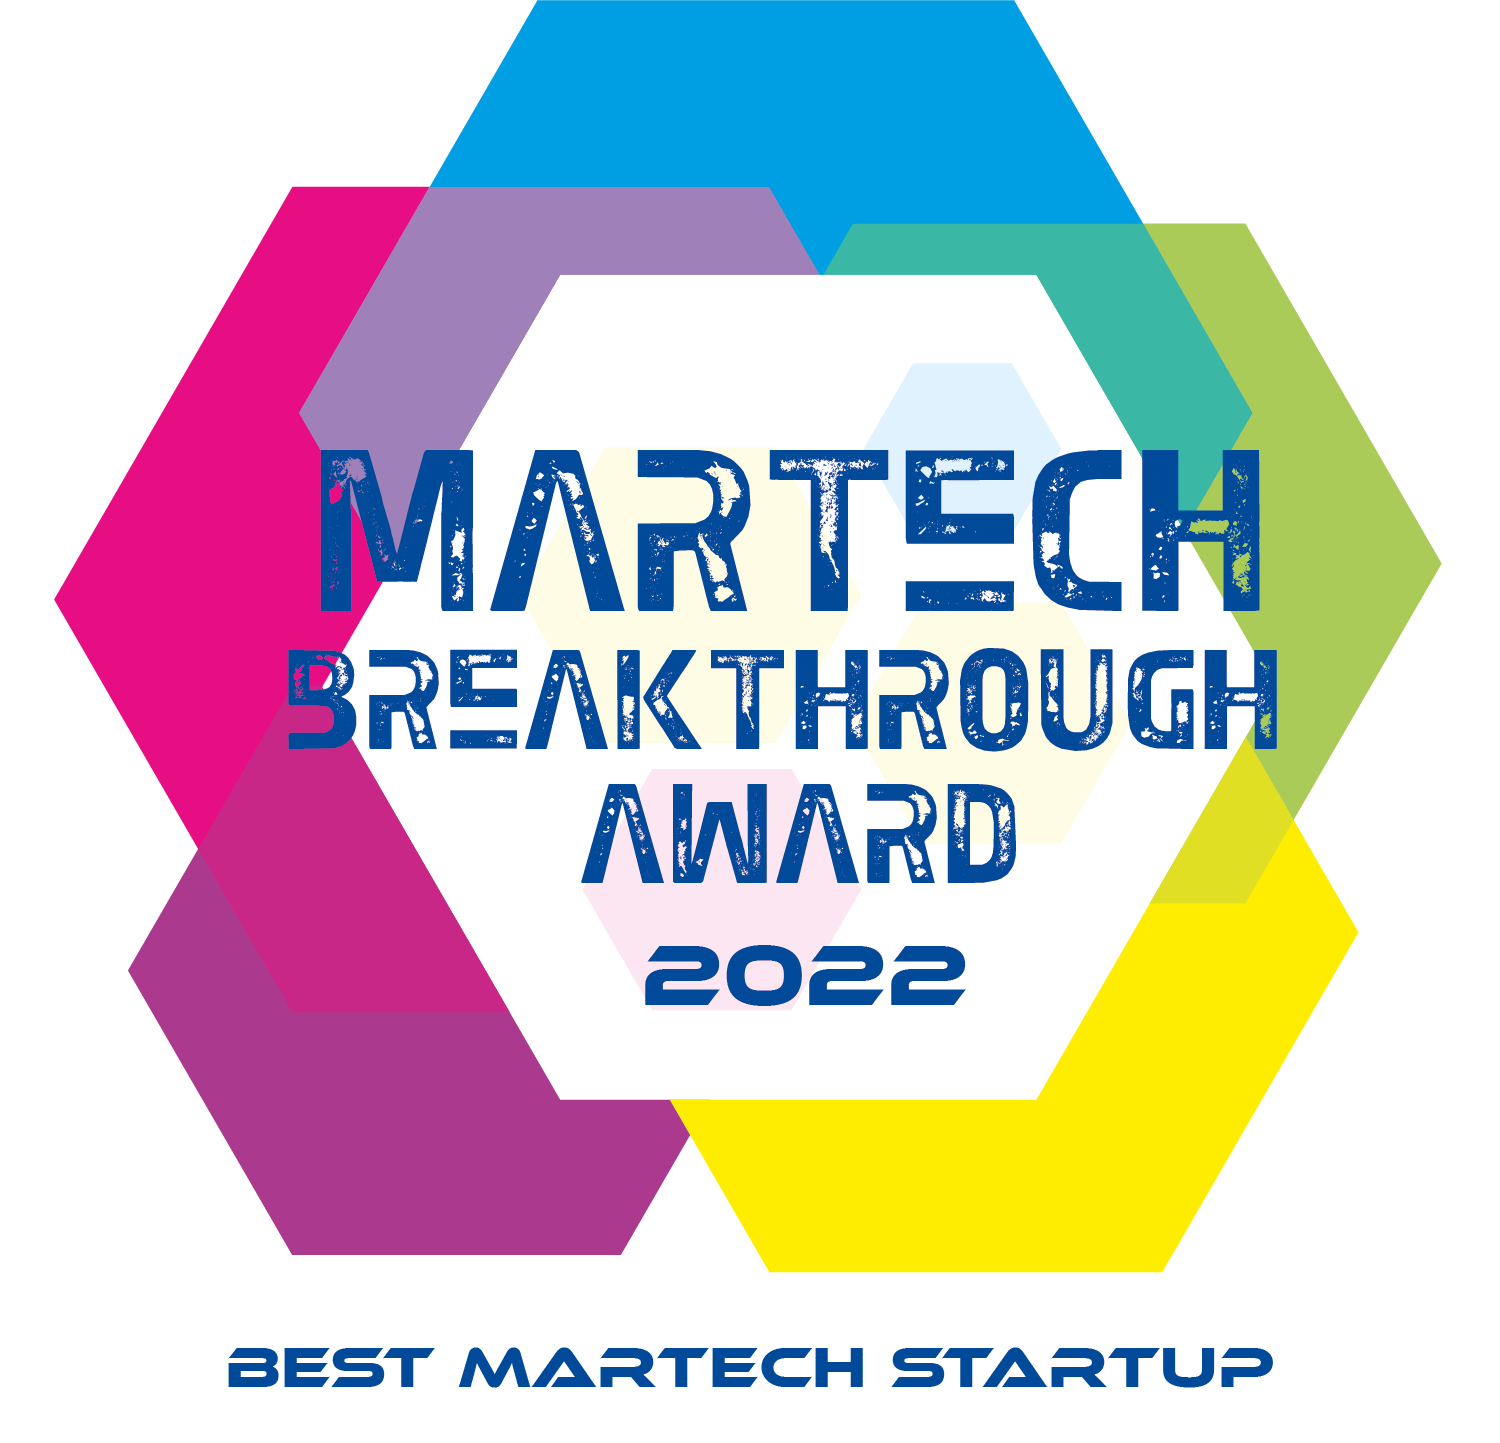 Martech breakthrough award logo